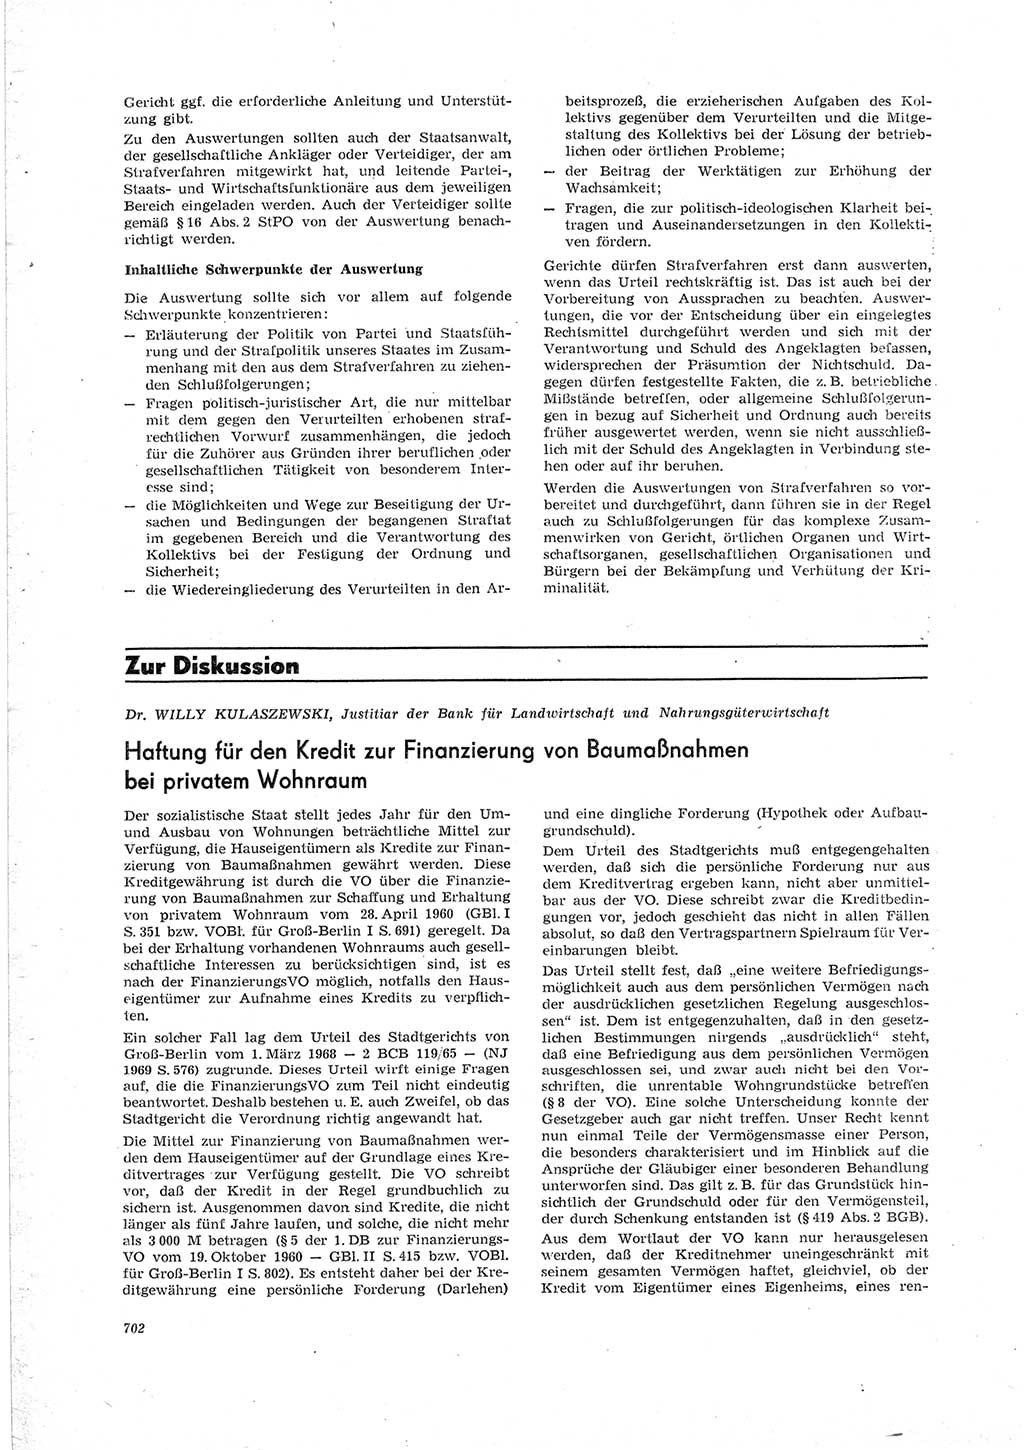 Neue Justiz (NJ), Zeitschrift für Recht und Rechtswissenschaft [Deutsche Demokratische Republik (DDR)], 23. Jahrgang 1969, Seite 702 (NJ DDR 1969, S. 702)